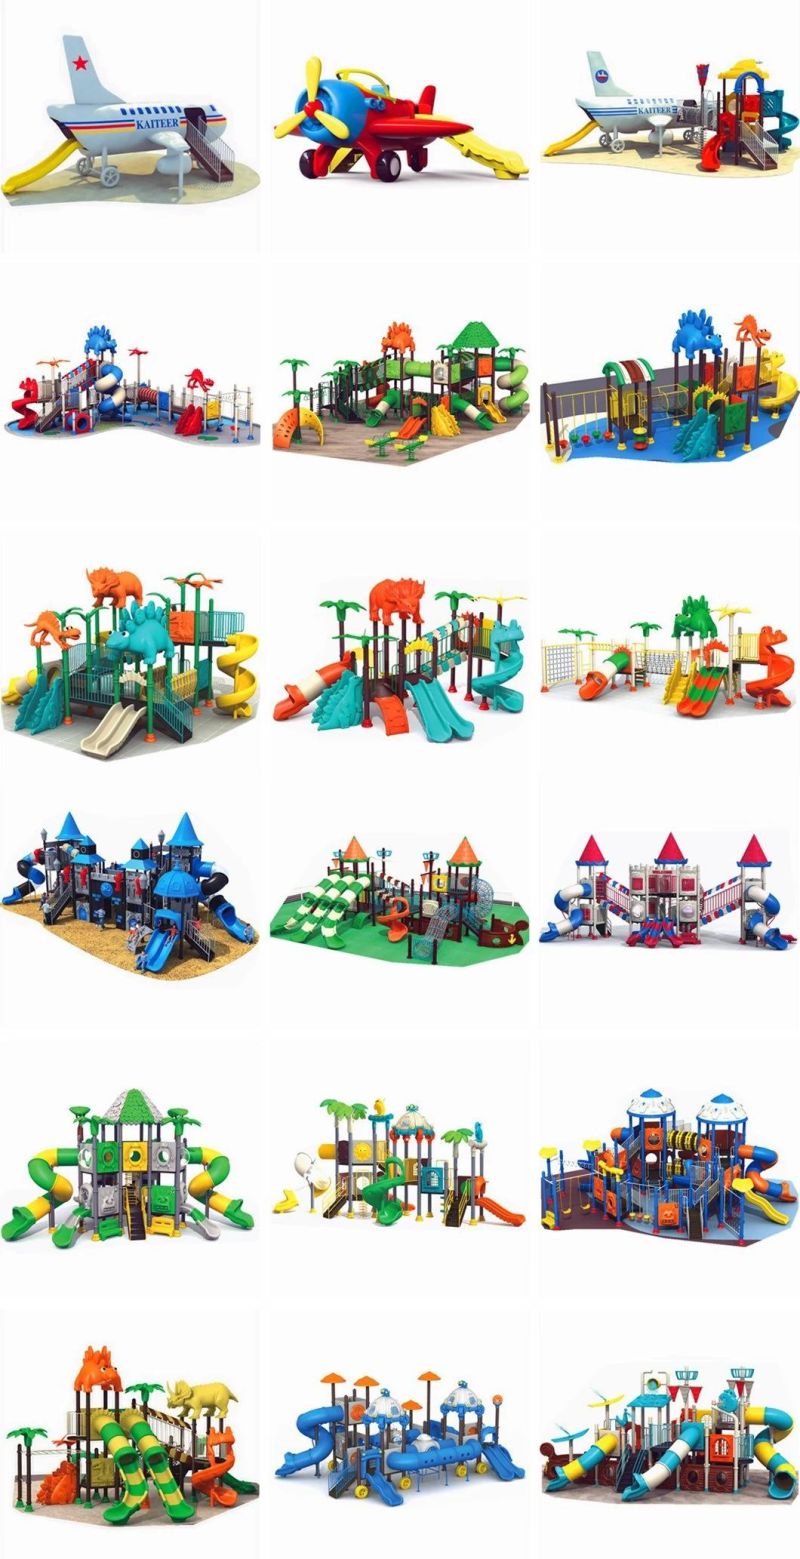 Outdoor Playground Combination Slide Indoor Kids Amusement Park Equipment